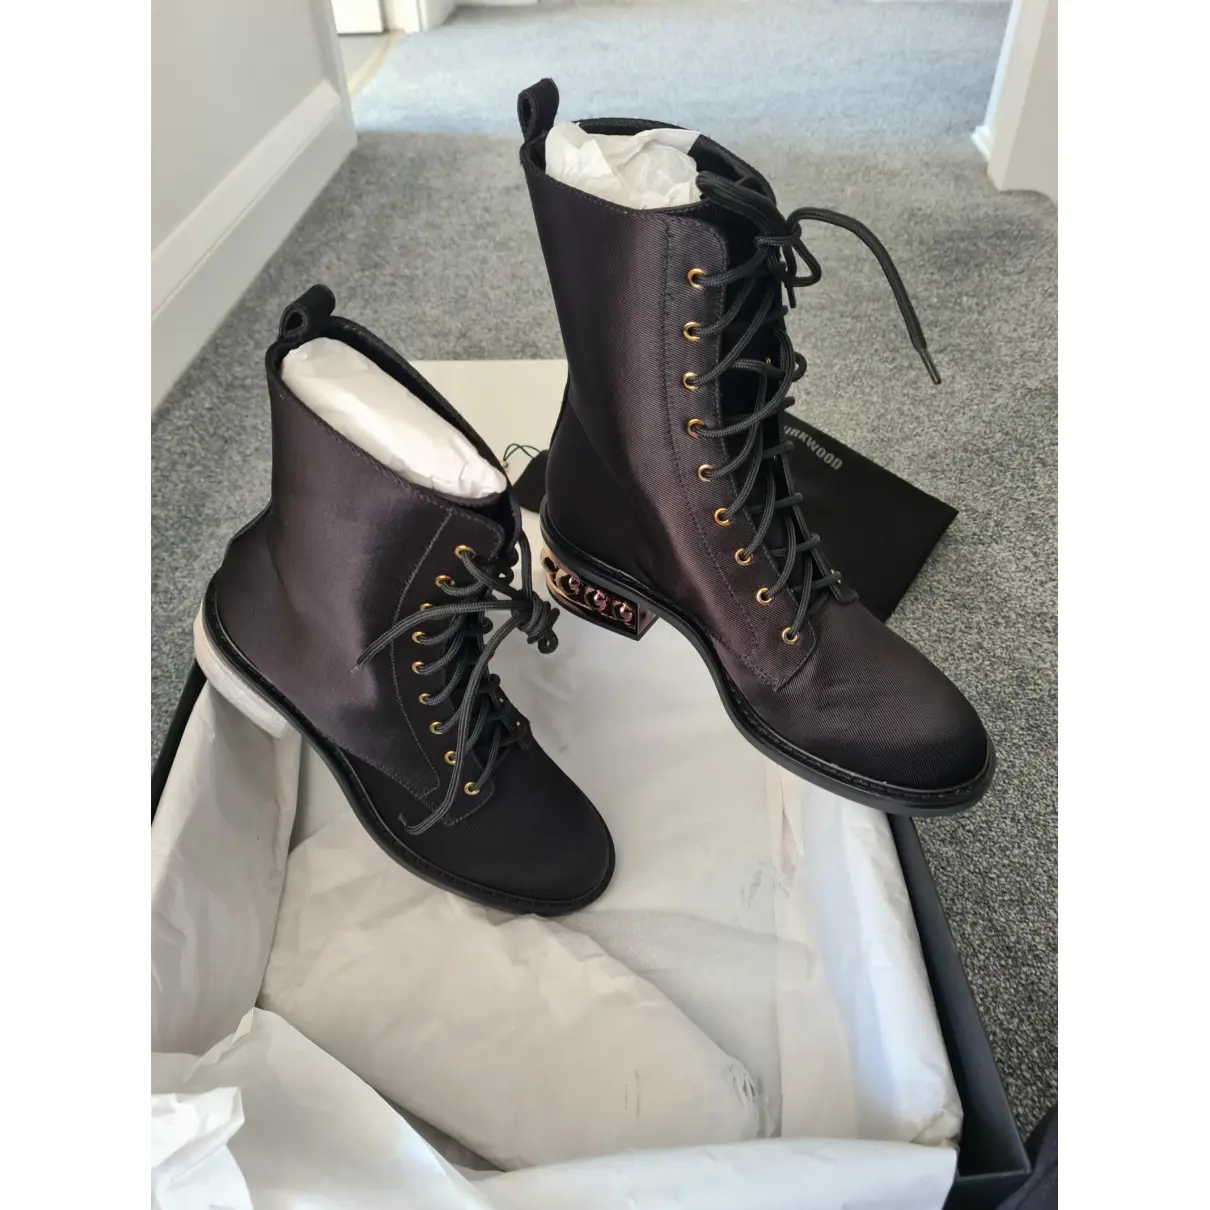 Leather ankle boots Nicholas Kirkwood